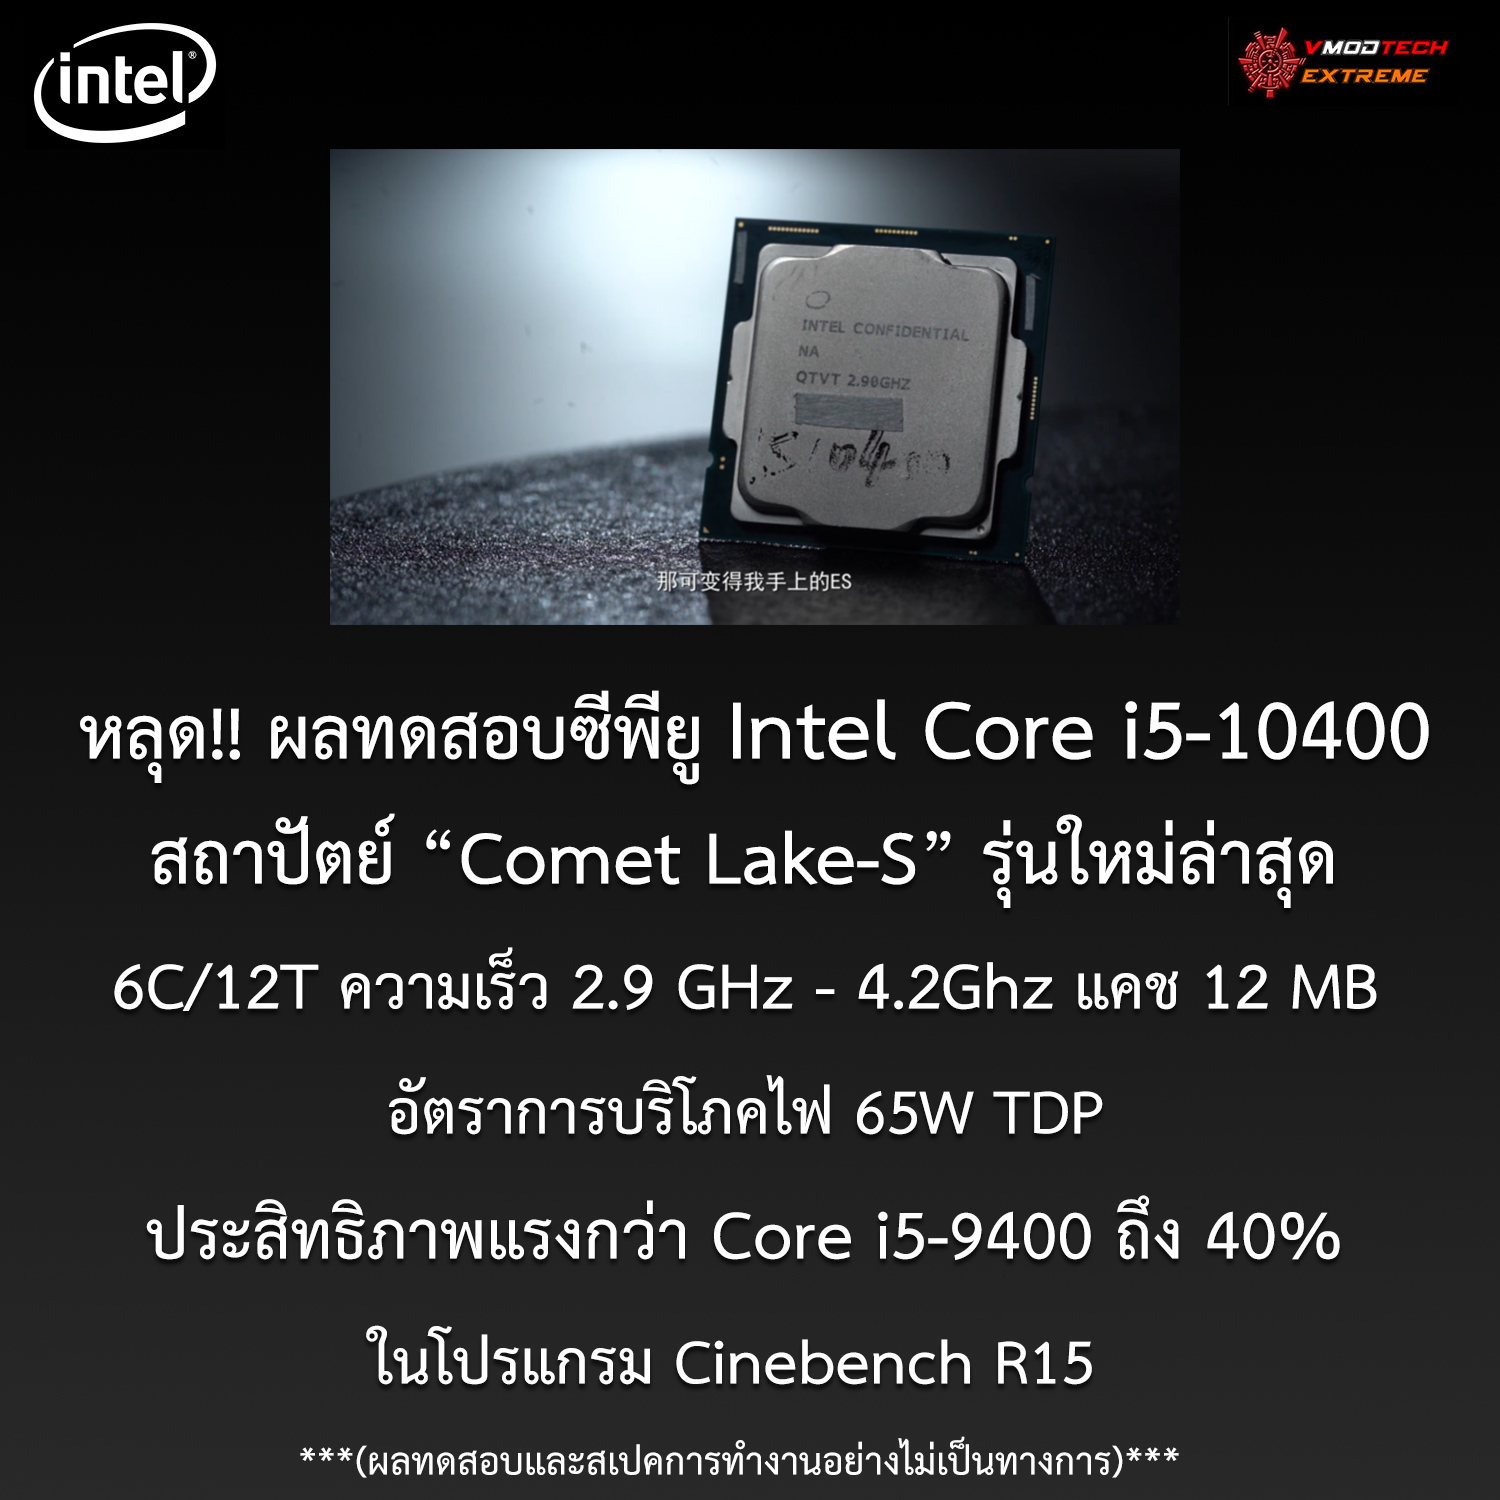 intel core i5 10400 benchmark หลุด!! ผลทดสอบ Intel Core i5 10400 รุ่นใหม่ล่าสุดประสิทธิภาพแรงกว่า Core i5 9400 ถึง 40% ประสิทธิภาพใกล้เคียง Core i7 9700F กันเลยทีเดียว 